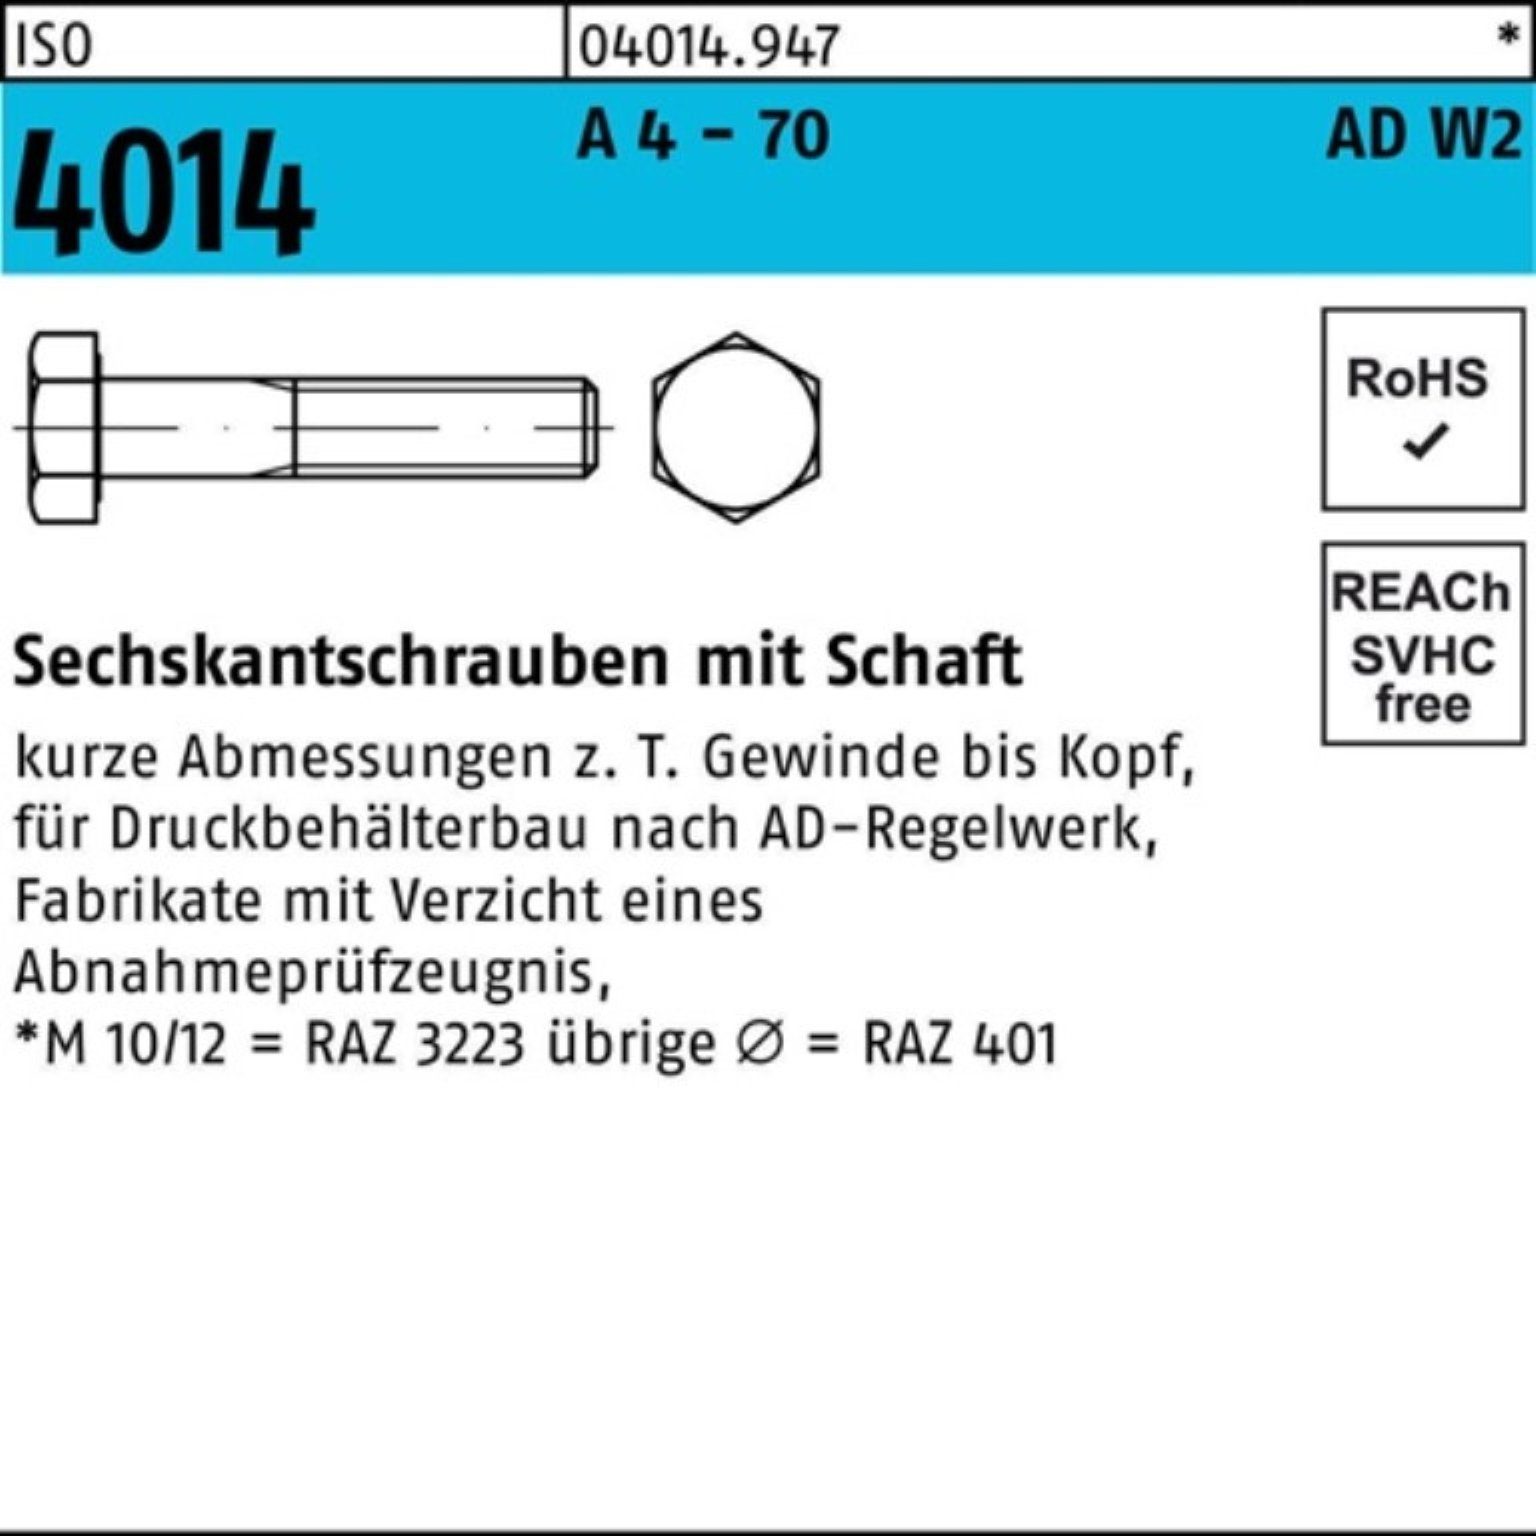 Bufab Sechskantschraube 100er Pack Sechskantschraube ISO 4014 Schaft M20x 180 A 4 - 70 AD-W2 1